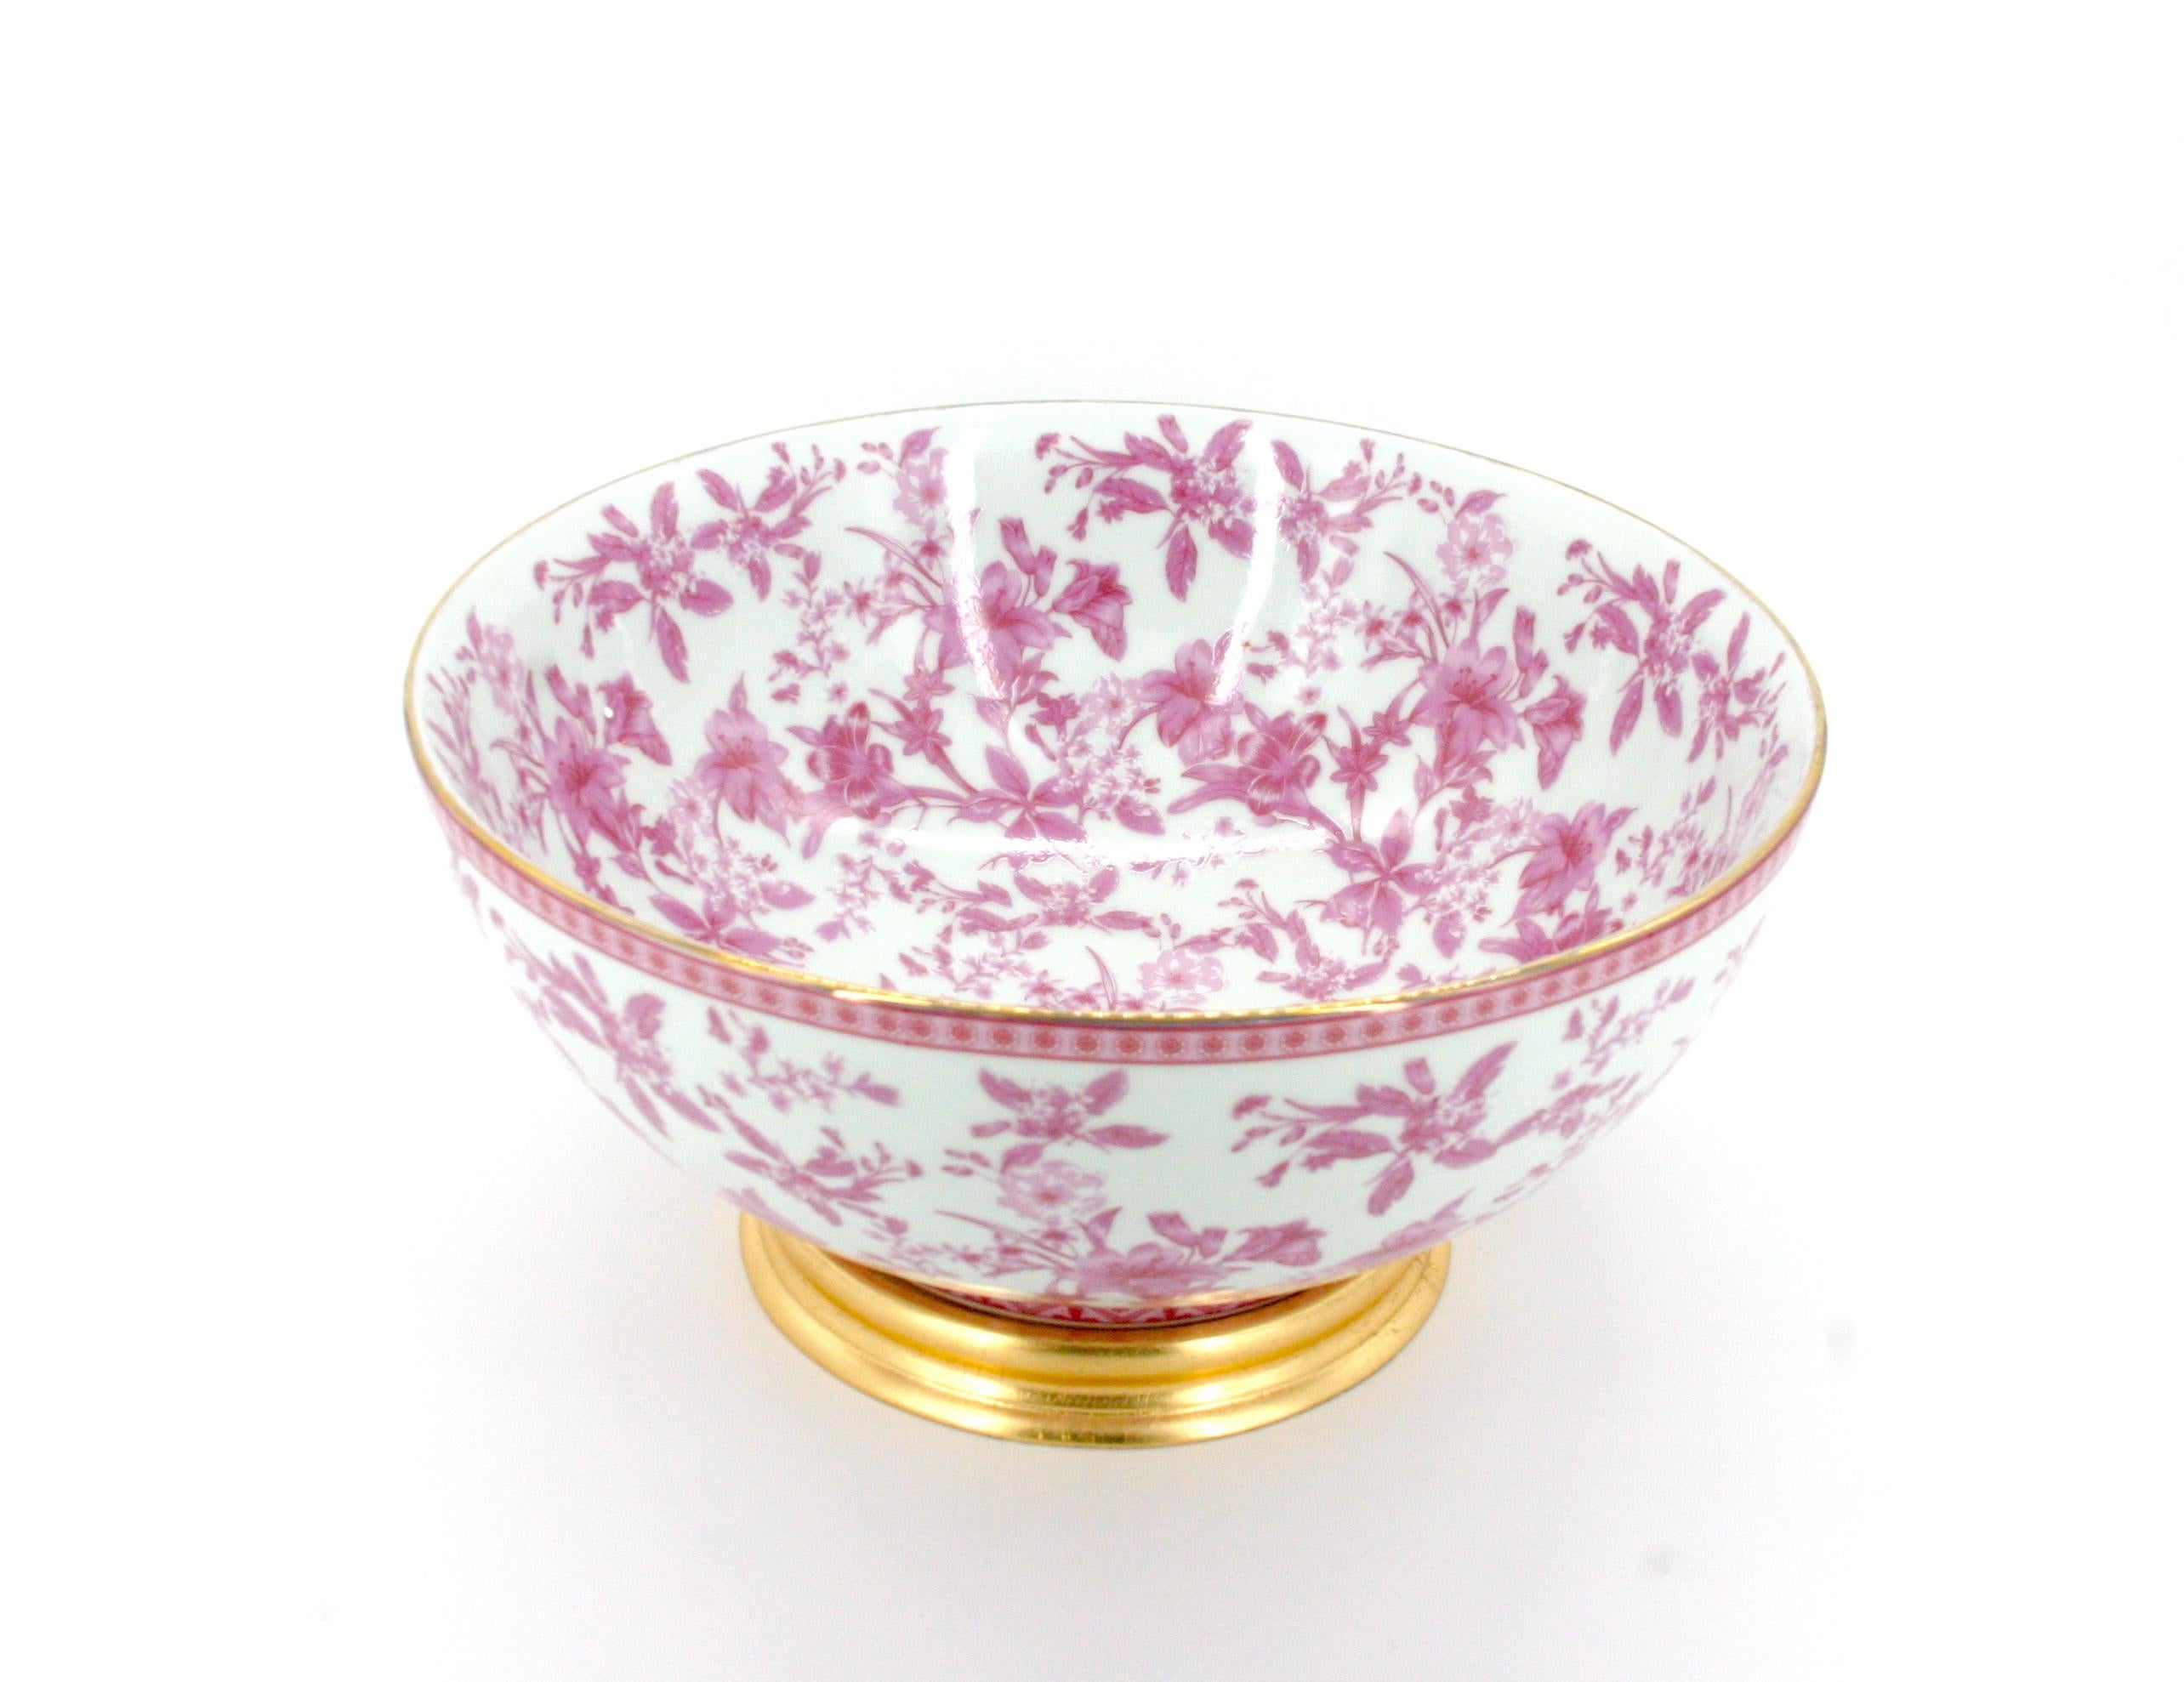 Magnifique bol décoratif / bol à punch en porcelaine émaillée française peint à la main. Le bol présente des détails floraux à l'intérieur et à l'extérieur, avec une garniture dorée sur le dessus et une base en bois doré détachable. Le bol est en